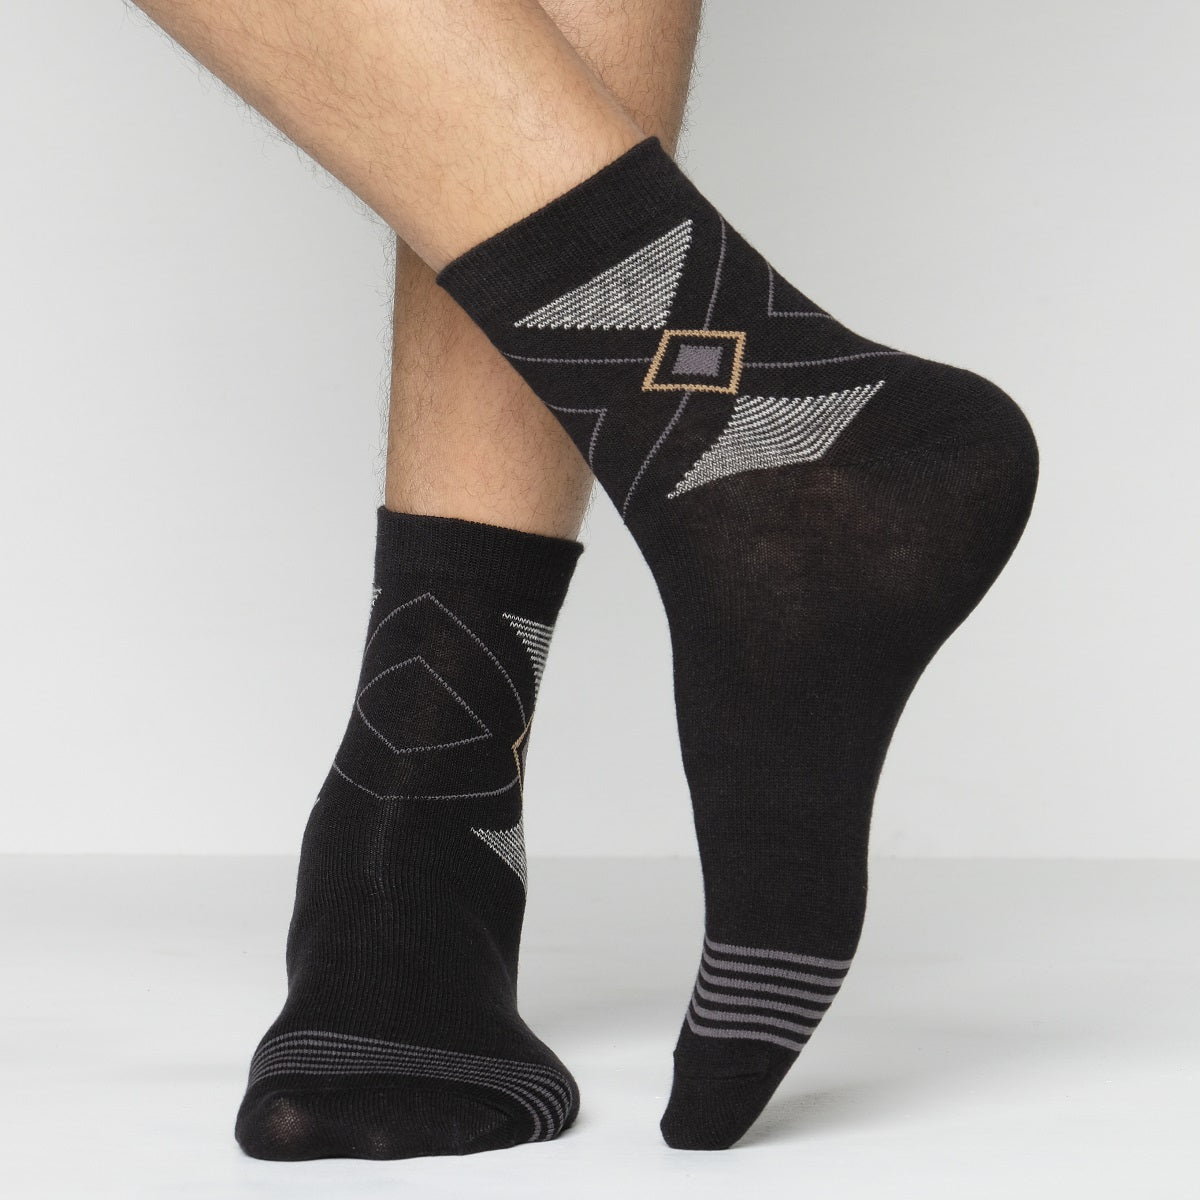 Look Ankle Socks For Men